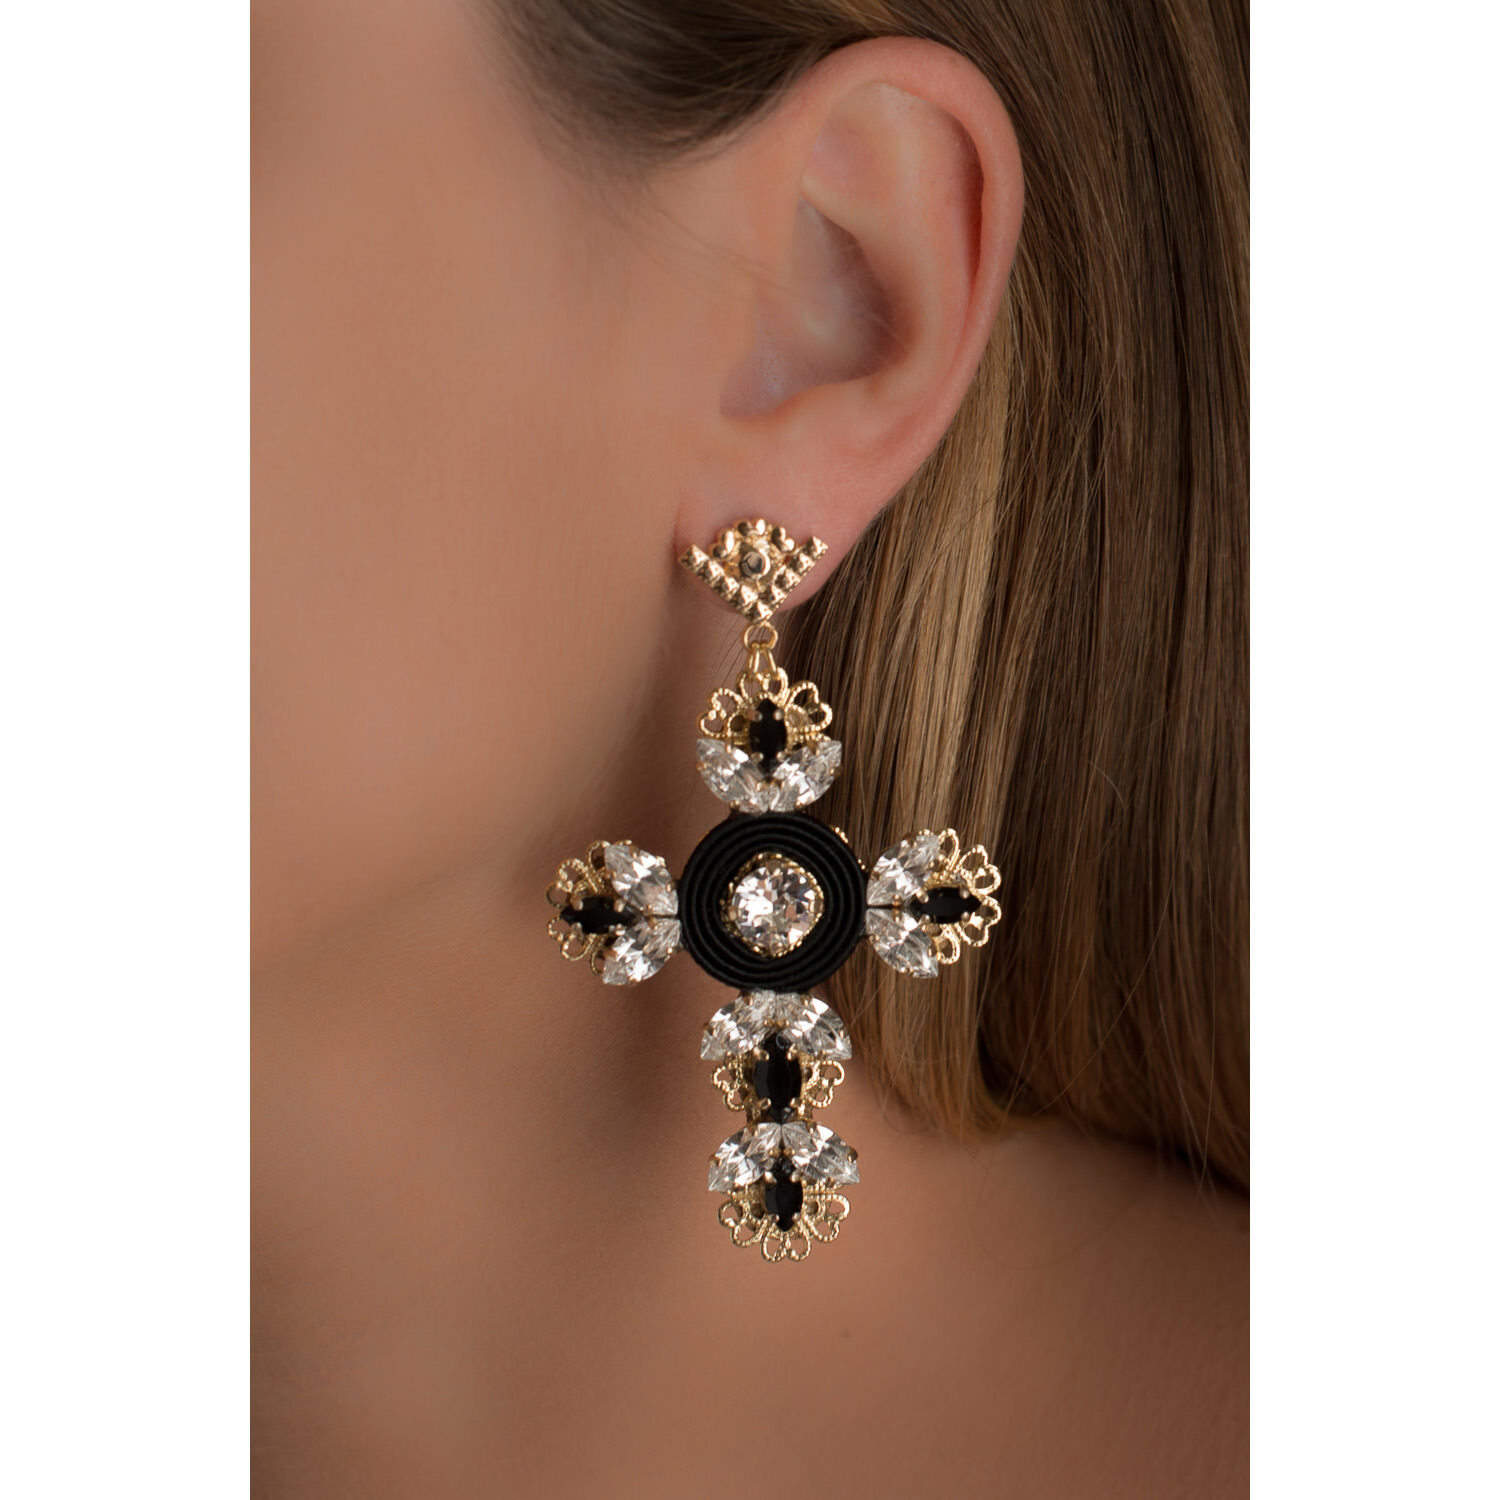 Croce con cristalli swarovski su orecchino da donna pendente grande nero e oro